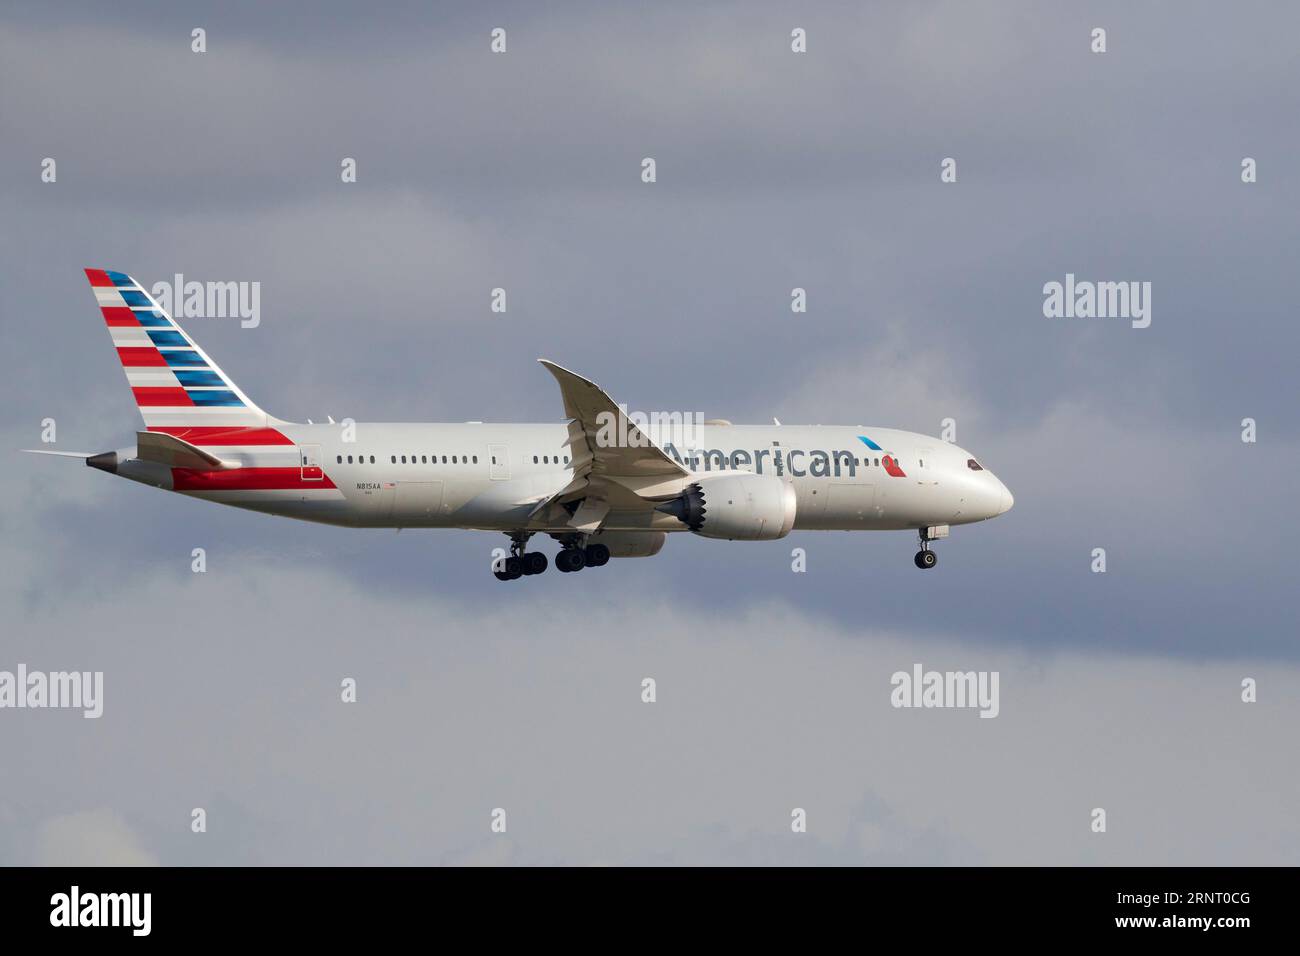 An American airlines company plane  landing at Barcelona airport, Un avión de la compañía American airlines aterrizando en el aeropuerto de Barcelona Stock Photo